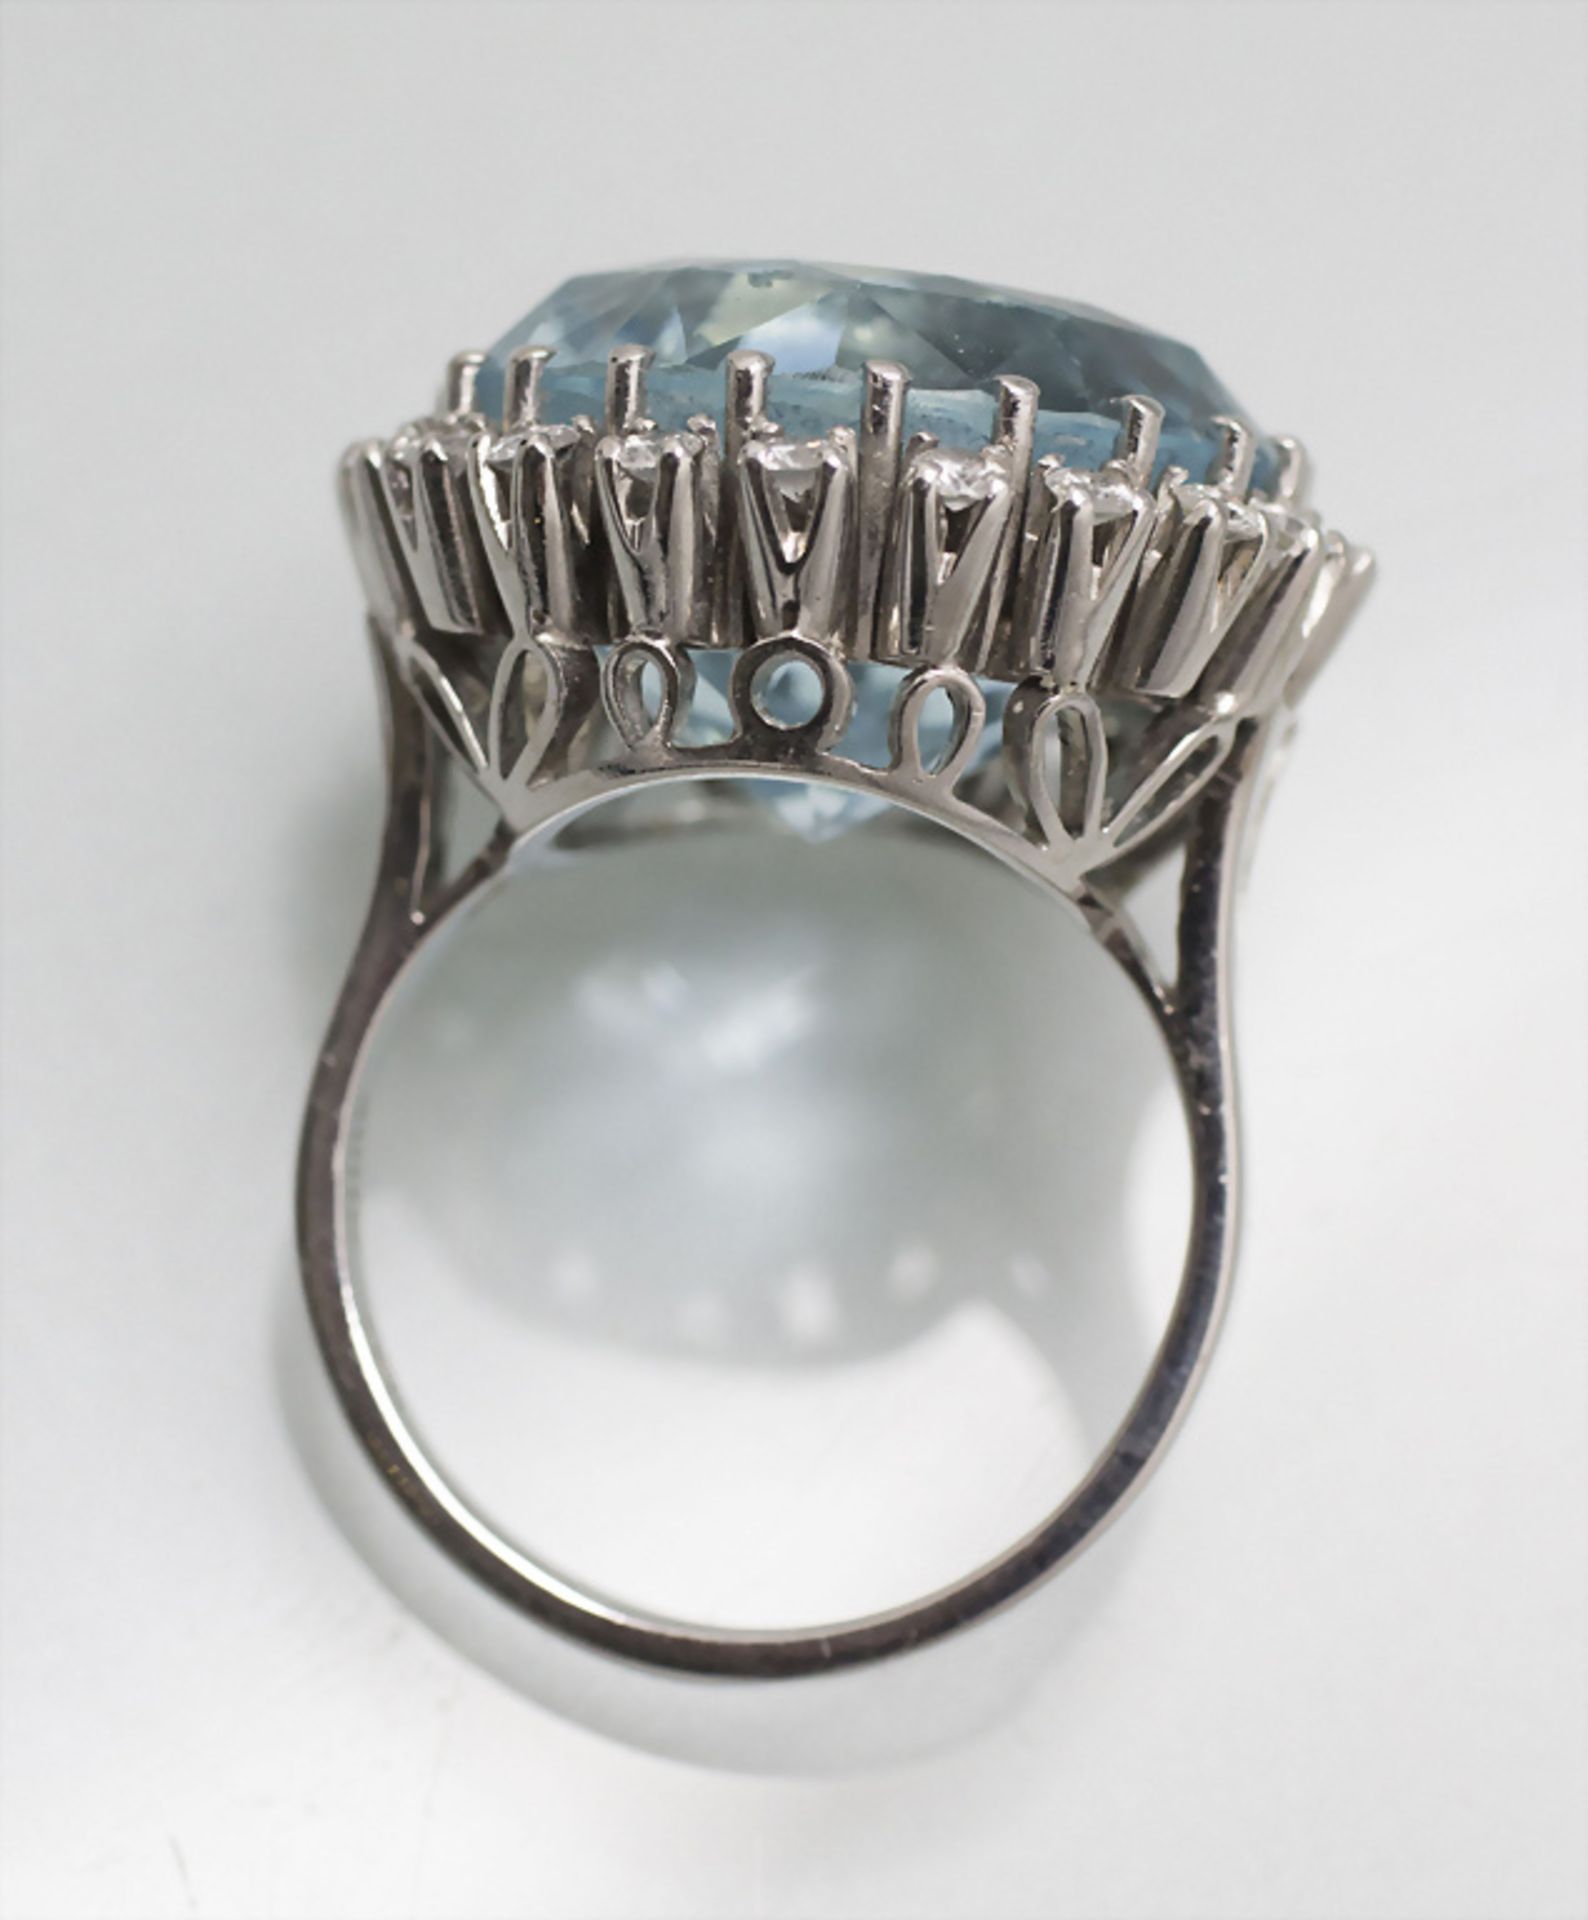 Damenring mit Aquamarin und Diamanten  / A ladies 18 ct gold ring with natural aquamarine and ... - Bild 4 aus 4